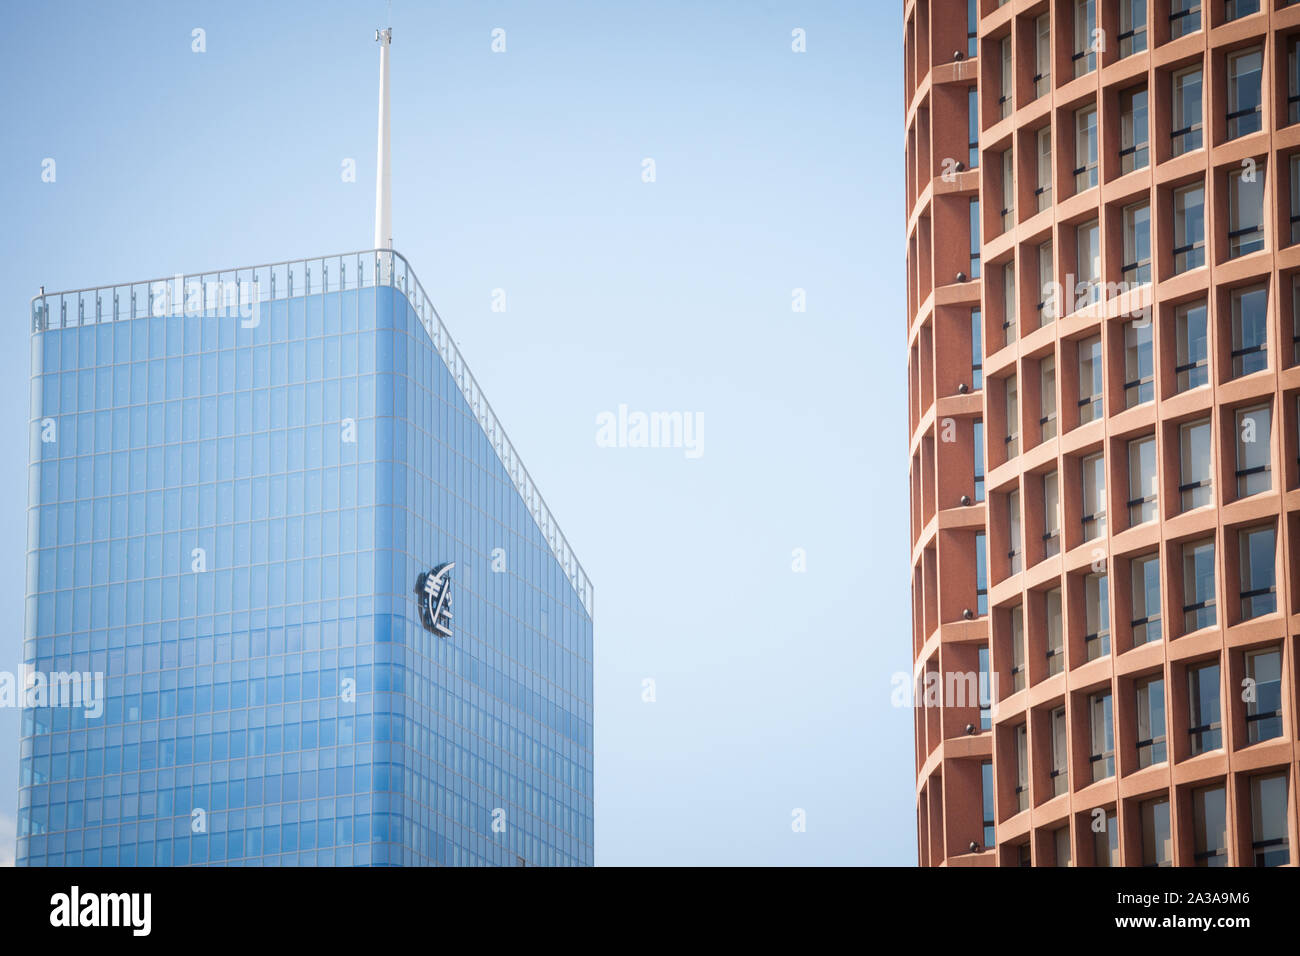 LYON, FRANCIA - Julio 13, 2019: el logotipo de Caisse d'Epargne en el tour Incity torre, su oficina principal. Caisse d'Epargne es un banco minorista cooperativo, es uno Foto de stock